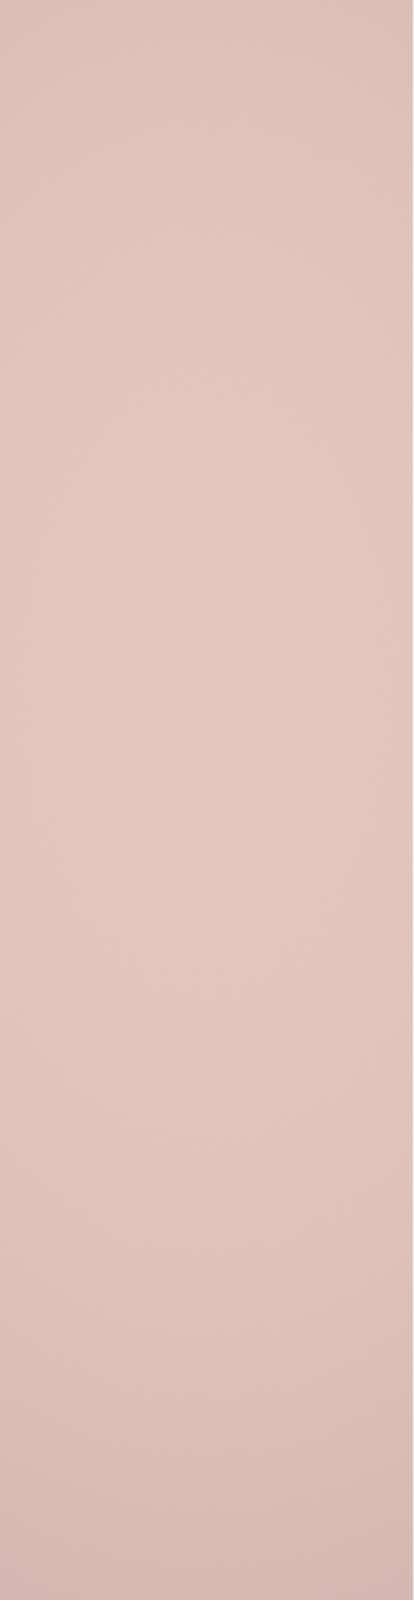 2115   EM Pale Pink   M10   product